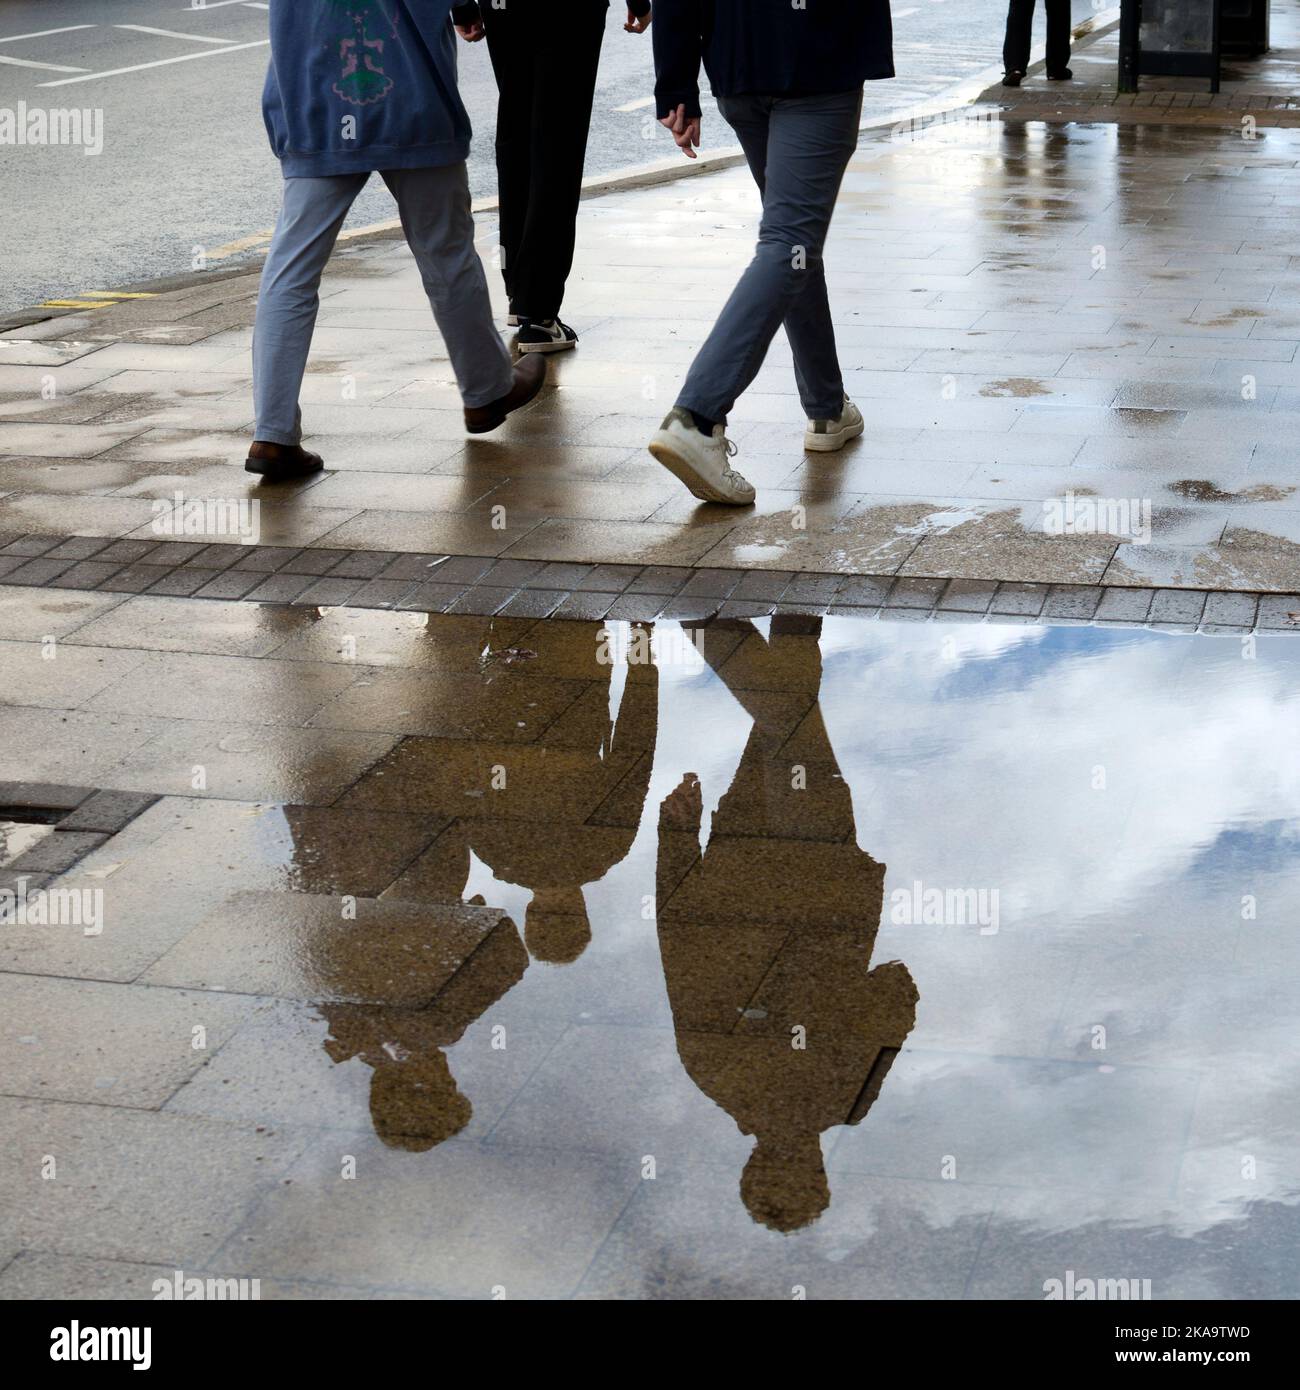 Drei Personen gehen, reflektiert in einer Pfütze, Leamington Spa, Großbritannien Stockfoto